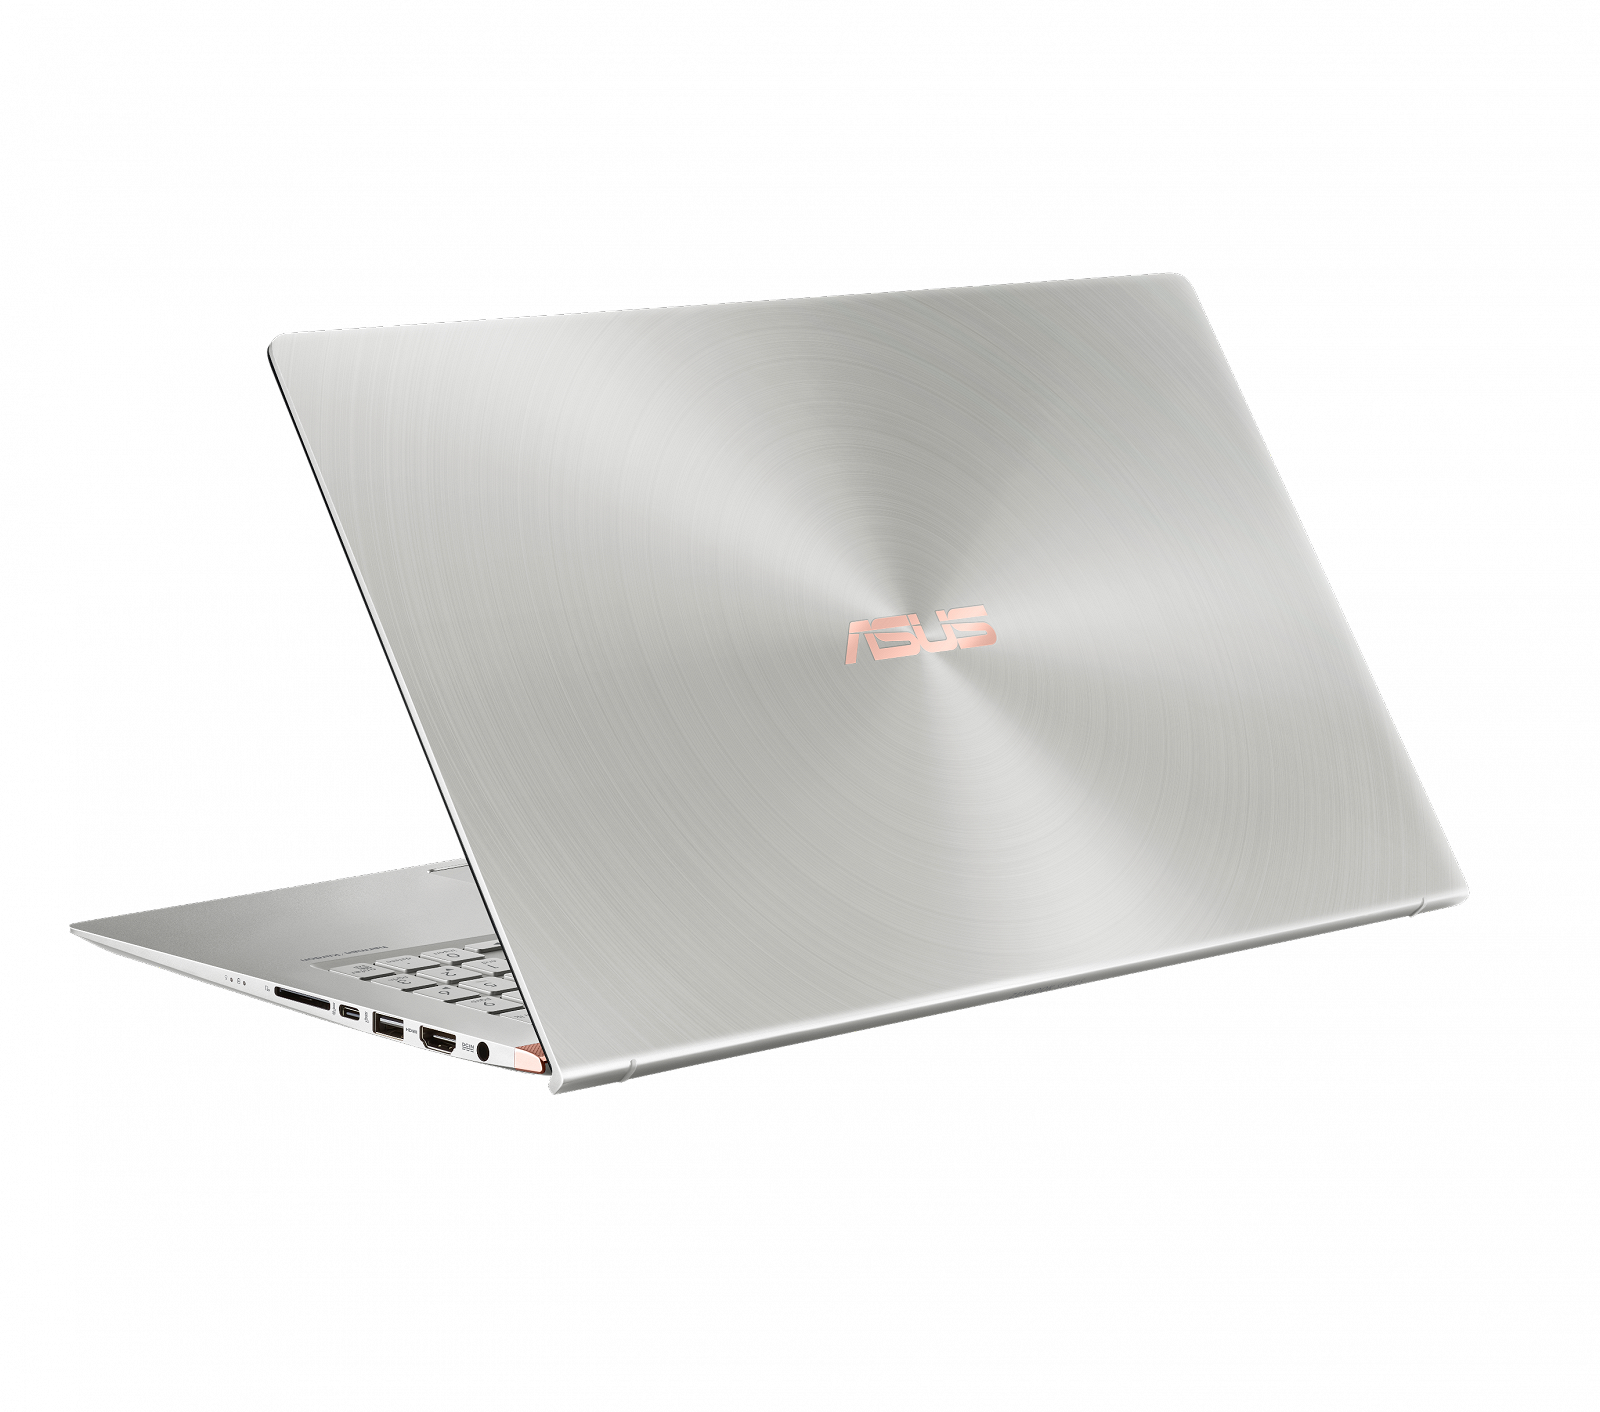 Asus ZenBook 2018